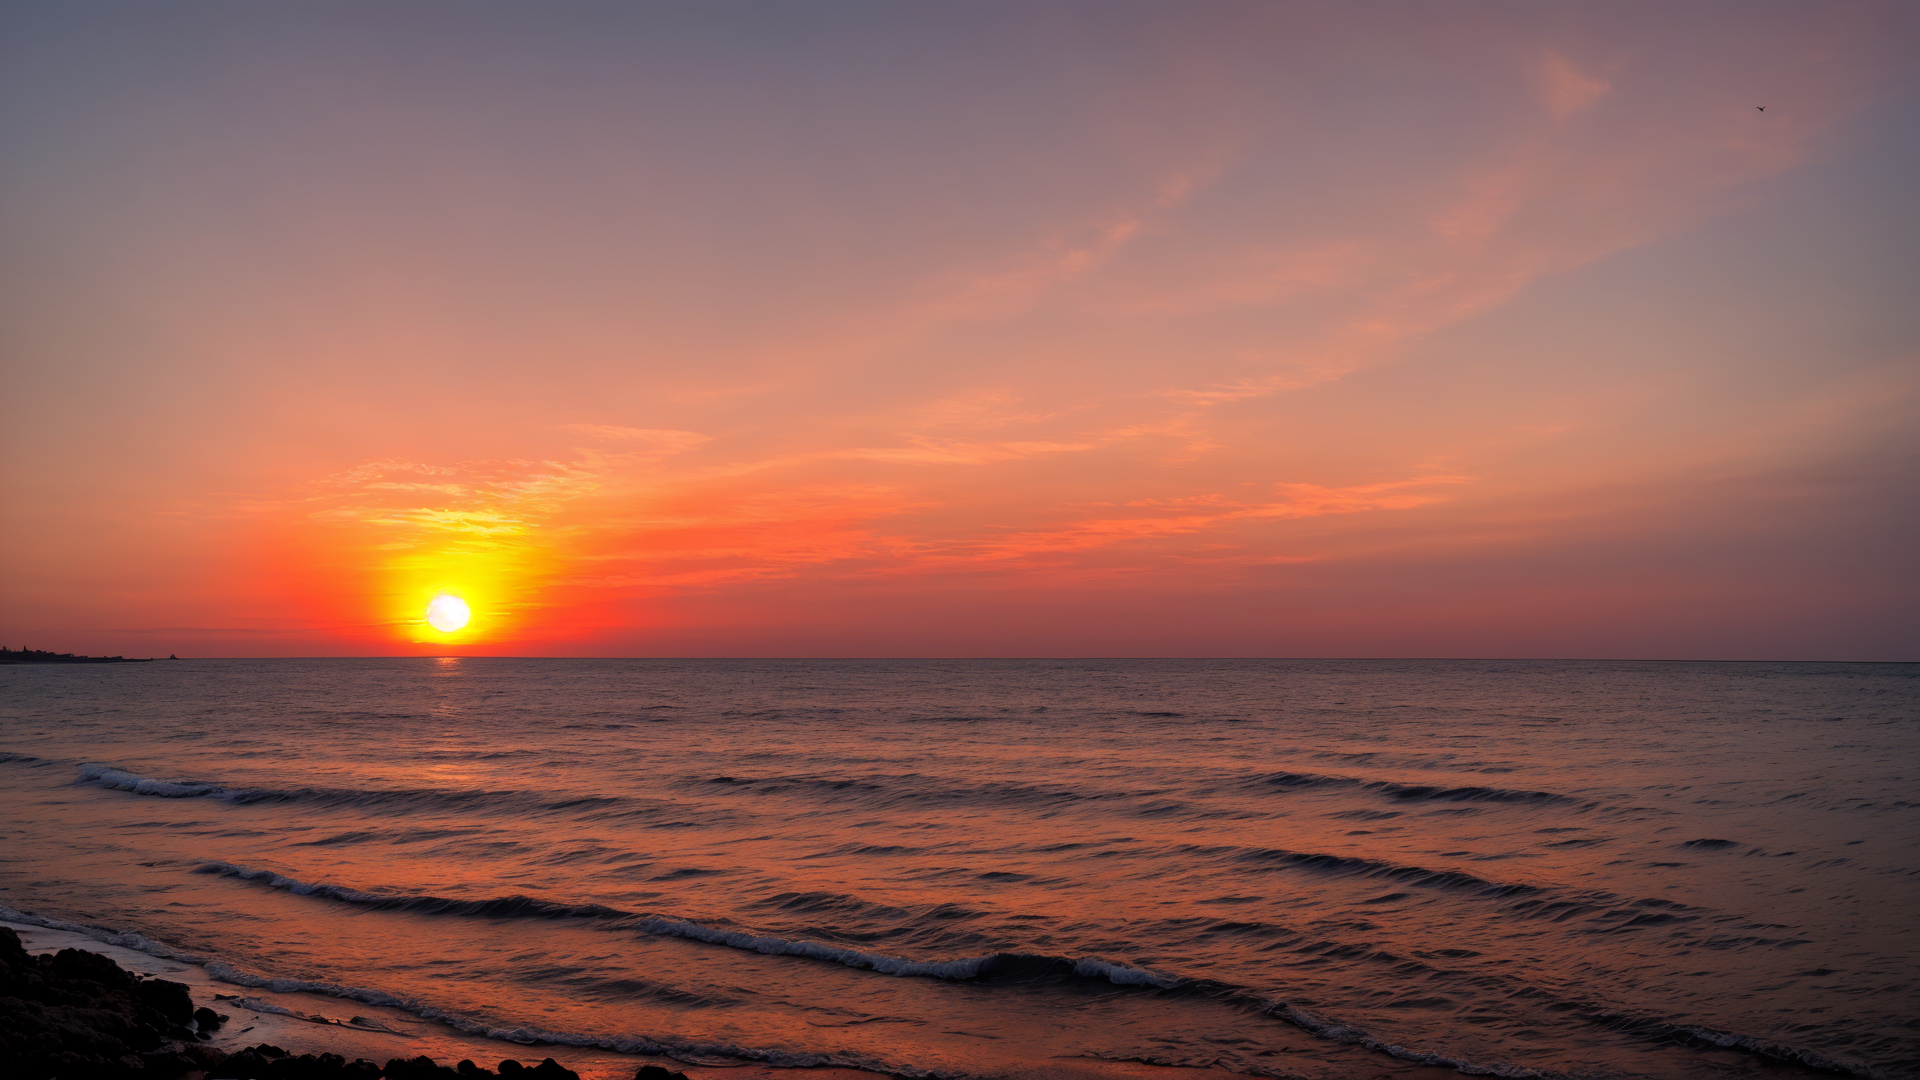 霞光满天的海边红日自然风景图横屏壁纸图片